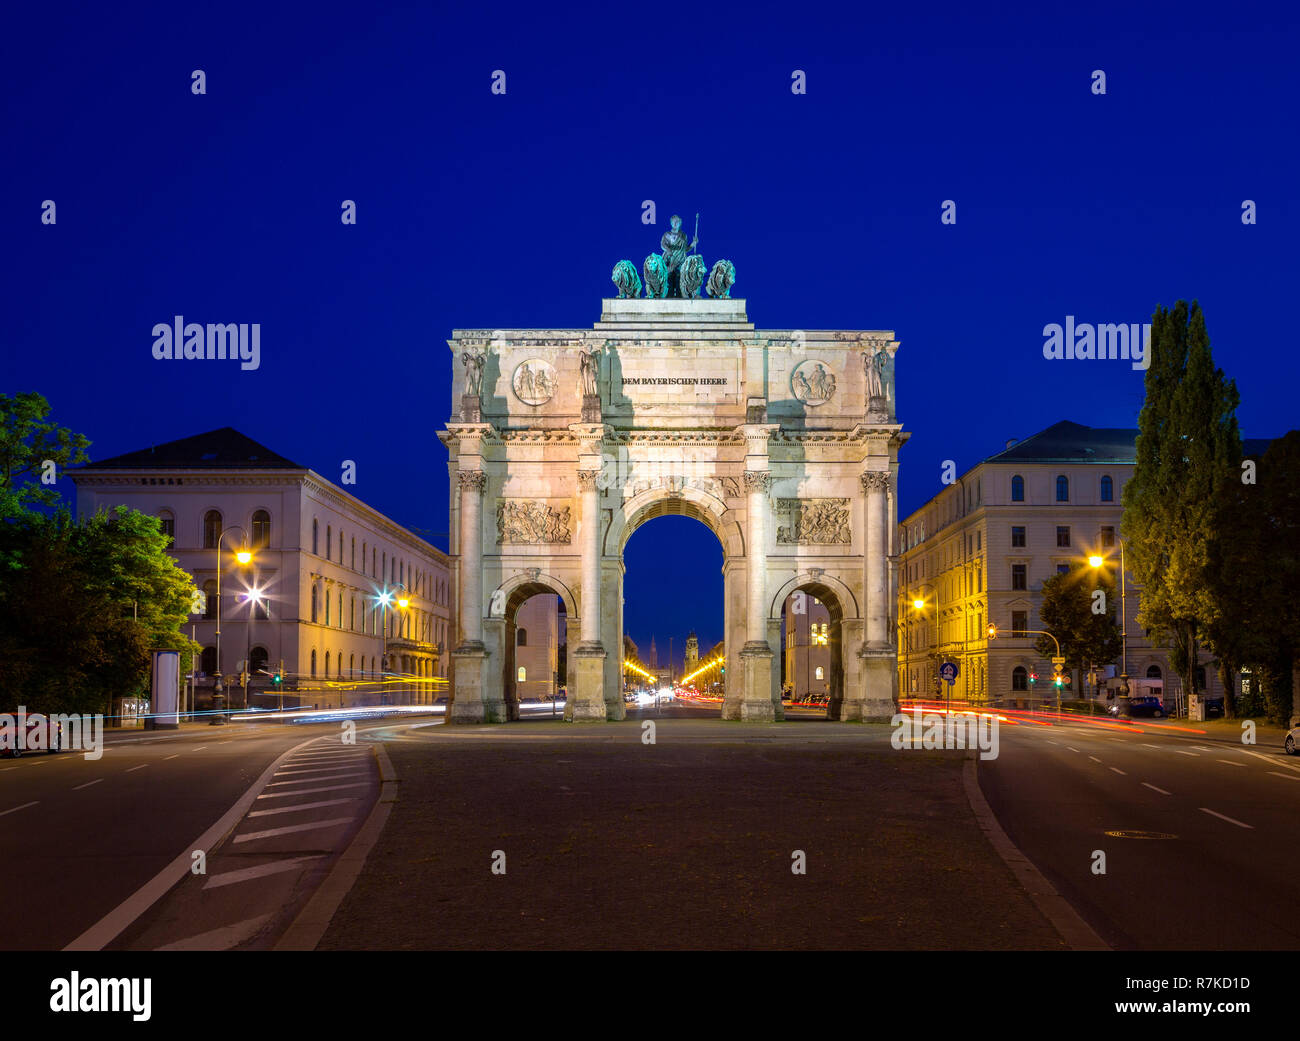 Arco di Trionfo nel centro cittadino di Monaco di Baviera a notte durante le ore di colore blu. Quadriga statua in cima. Foto Stock